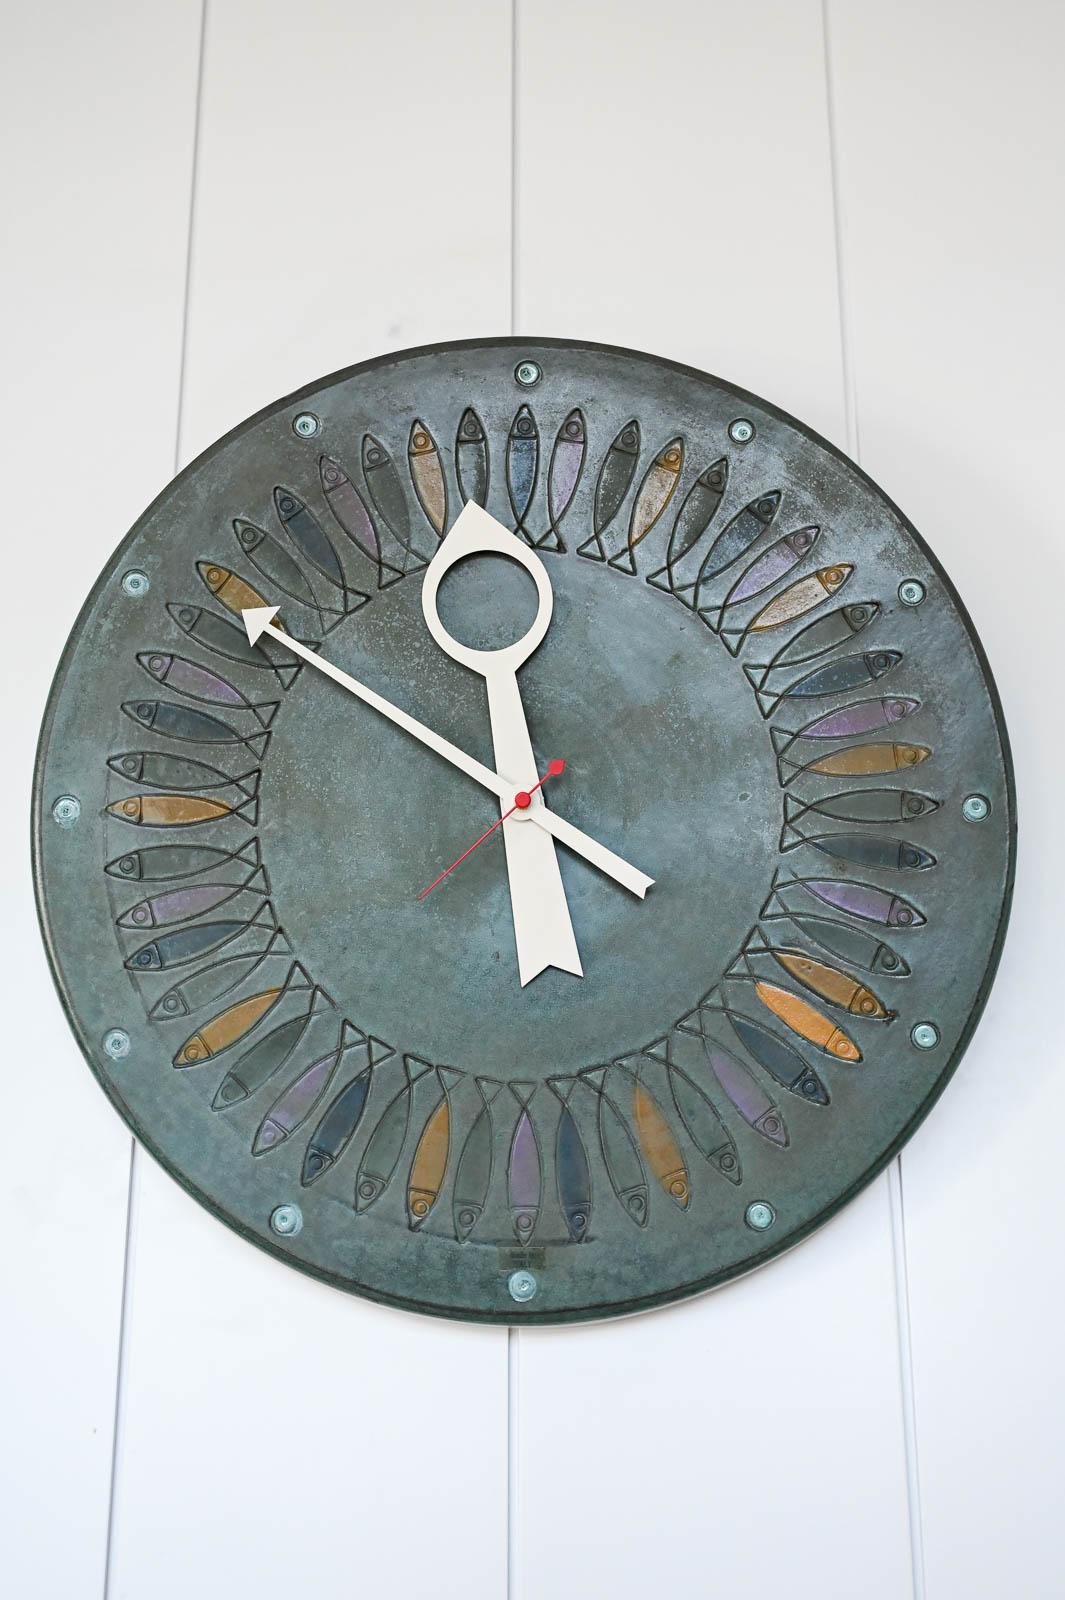 Keramische Meridian Fischuhr Modell 7543 von Howard Miller.  Original signierte Uhr mit seltenem Fischmotiv in gedämpfter grüner Farbe.  Die Uhr ist in einem ausgezeichneten Zustand, das Uhrwerk wurde ersetzt und die Zeiger sind neu vom Hersteller,